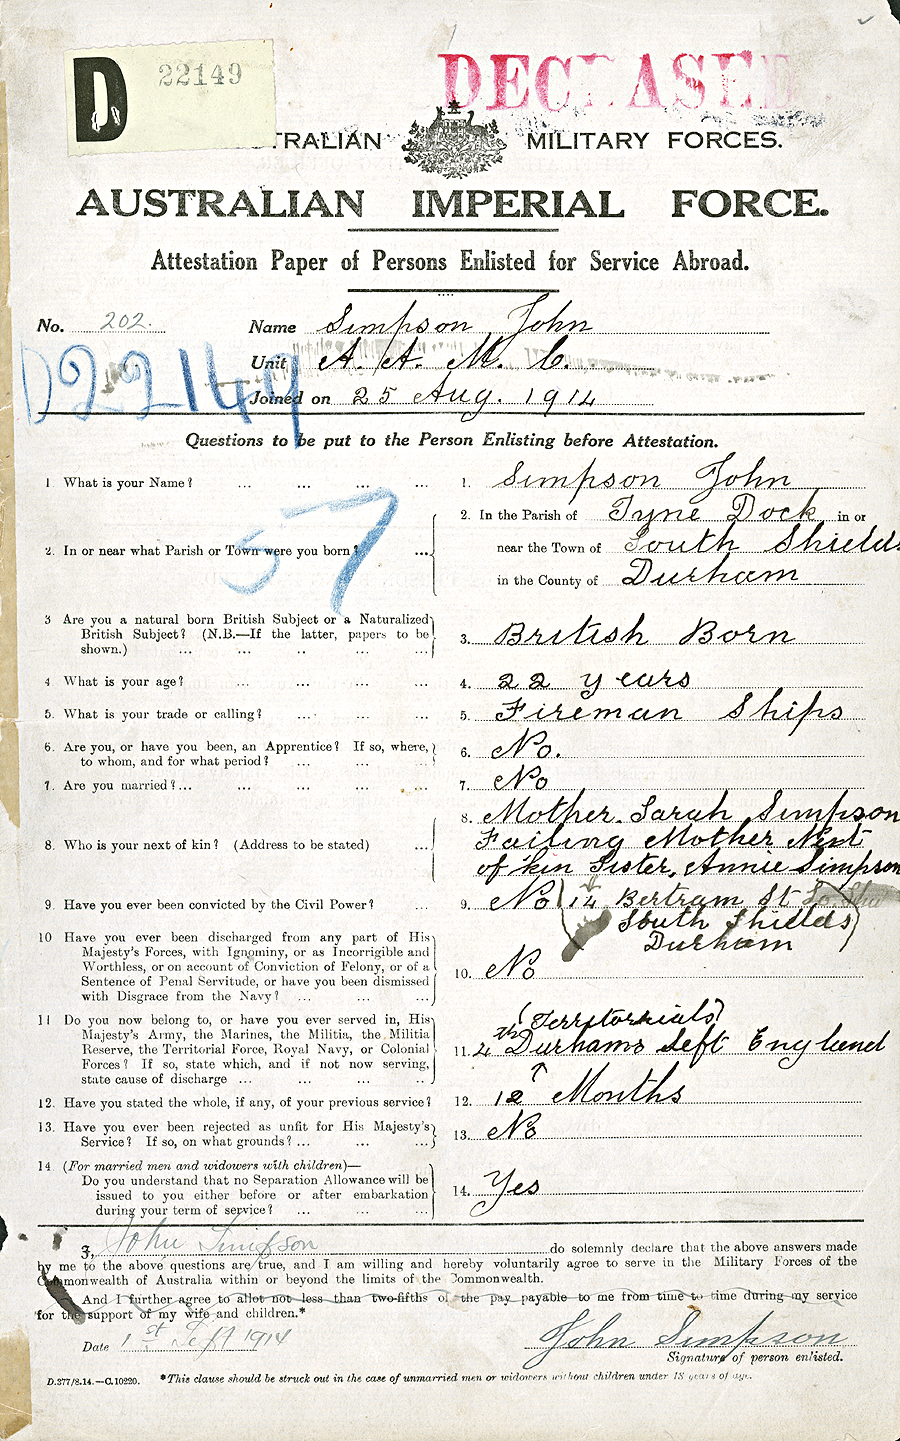 제1차 세계대전 참전 호주군 병적기록

제1차 세계대전에 파병되었던 호주군 소속 ‘존 심슨’일병에 대한 병적기록.
